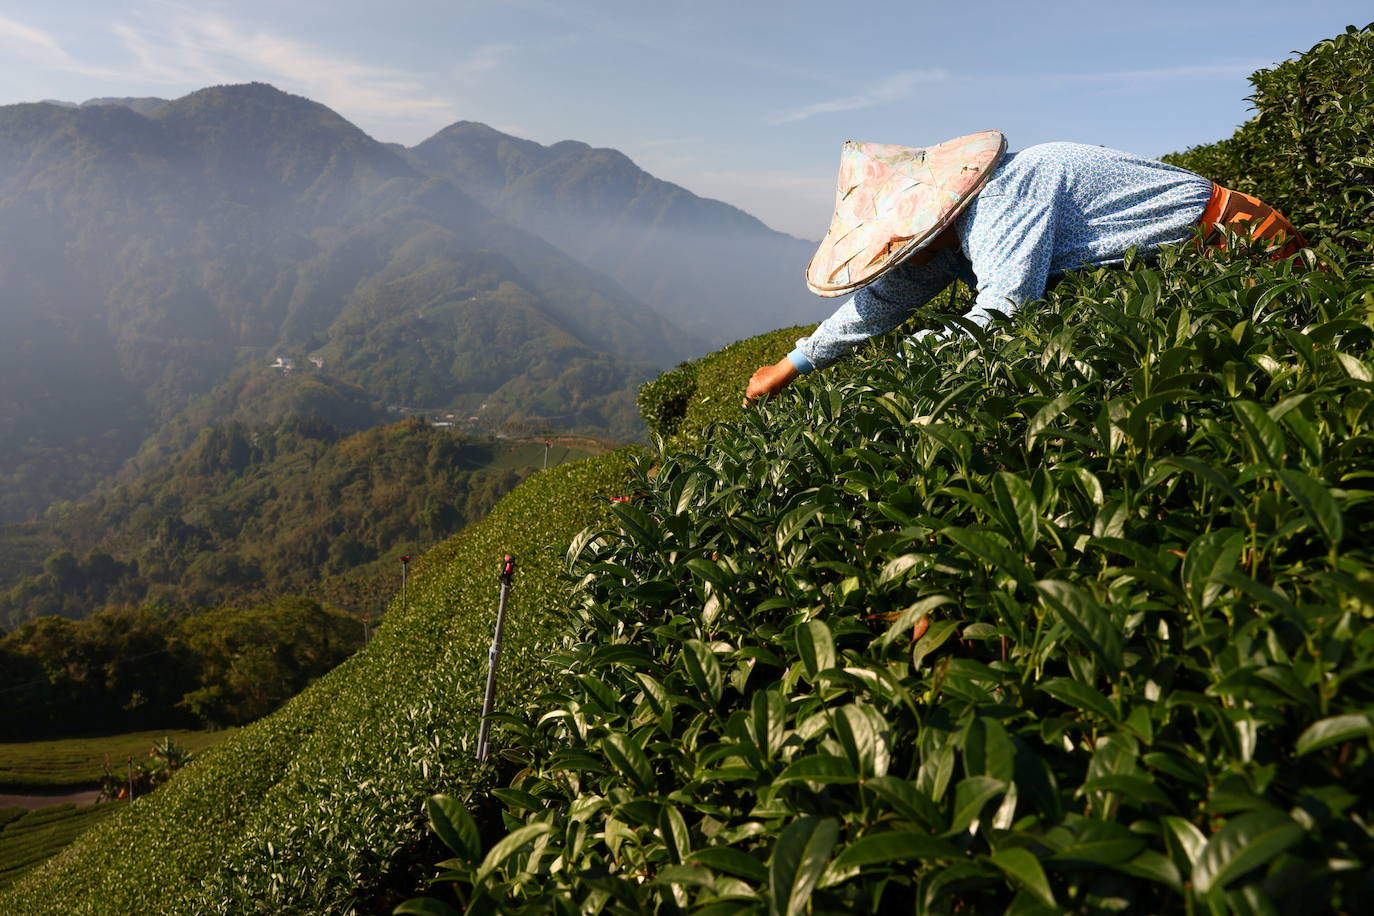 Un trabajador recolecta hojas de té en una plantación en Jiayi, Taiwán, el 7 de mayo de 2021. Se paga al personal en función del peso del té que recolectan; sin embargo, la sequía ha provocado una disminución en el crecimiento que afecta la cantidad de dinero que pueden ganar por cosecha.